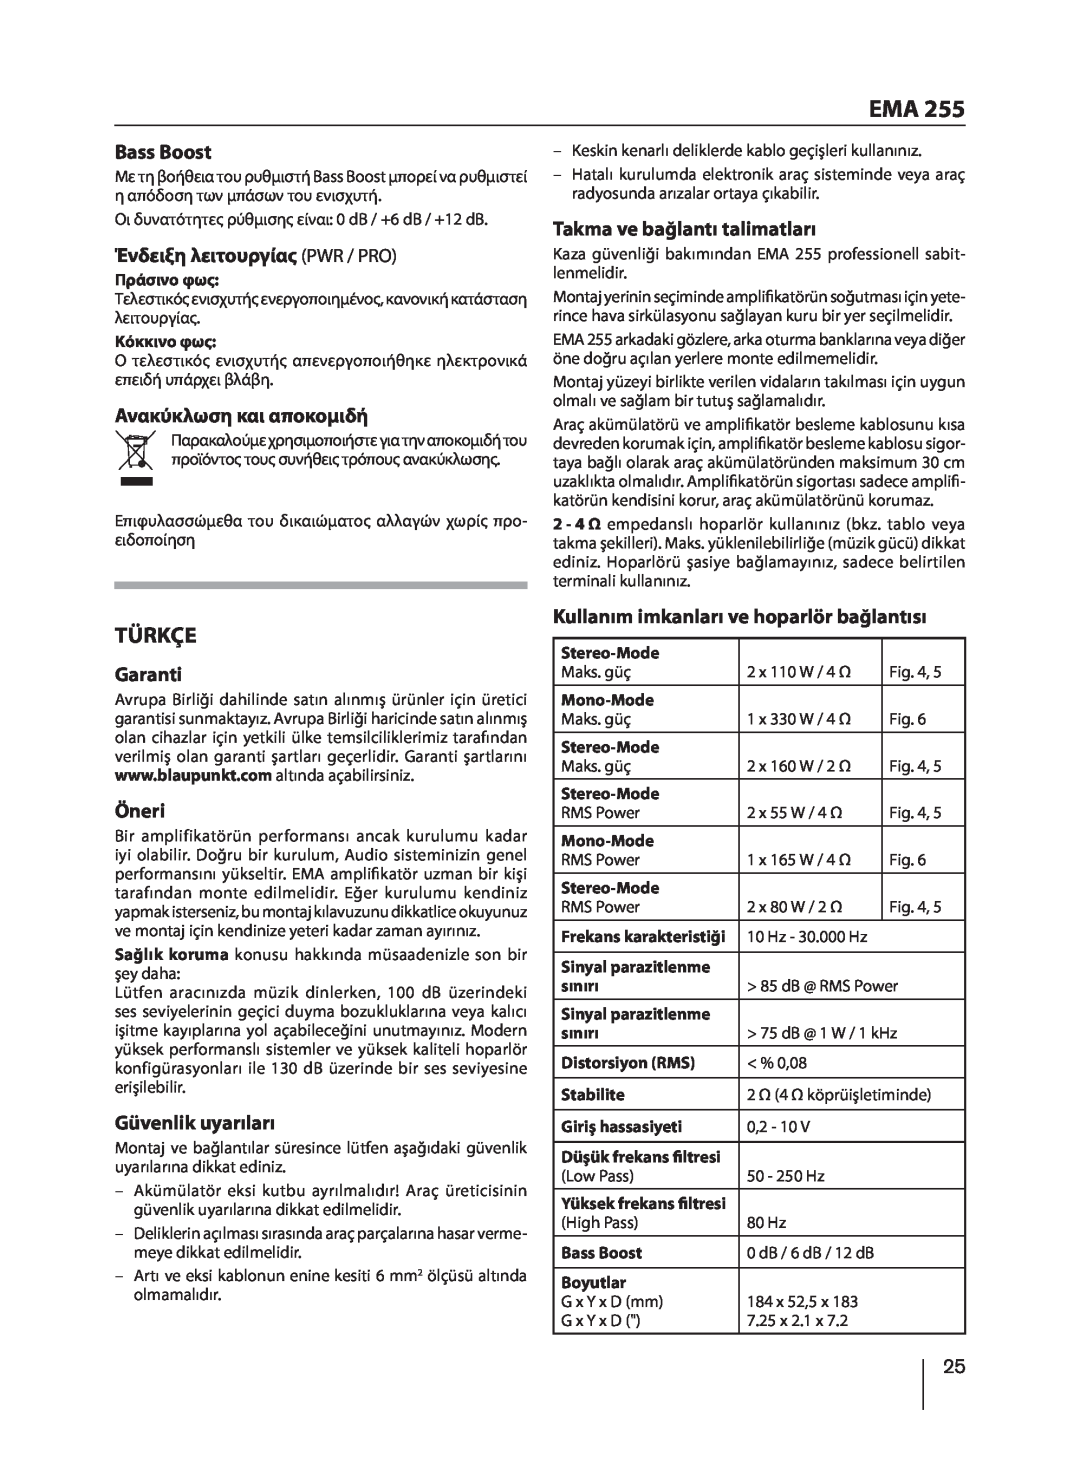 Blaupunkt EMA 255 manual Türkçe, Bass Boost, Ένδειξη λειτουργίας PWR / PRO, Ανακύκλωση και αποκομιδή, Garanti, Öneri 